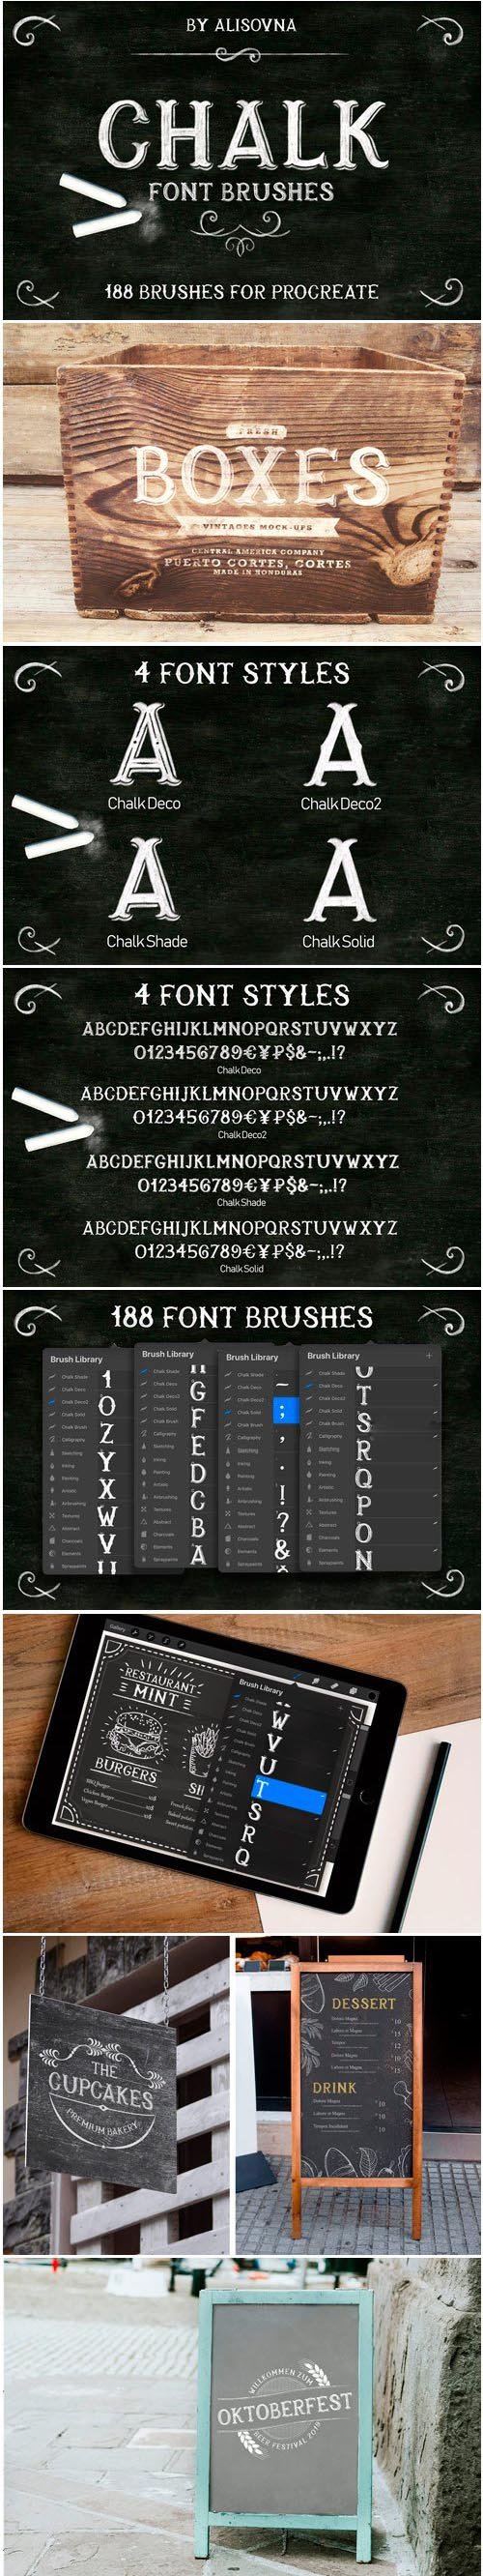 CM - Procreate Chalk Font Brushes 3661176